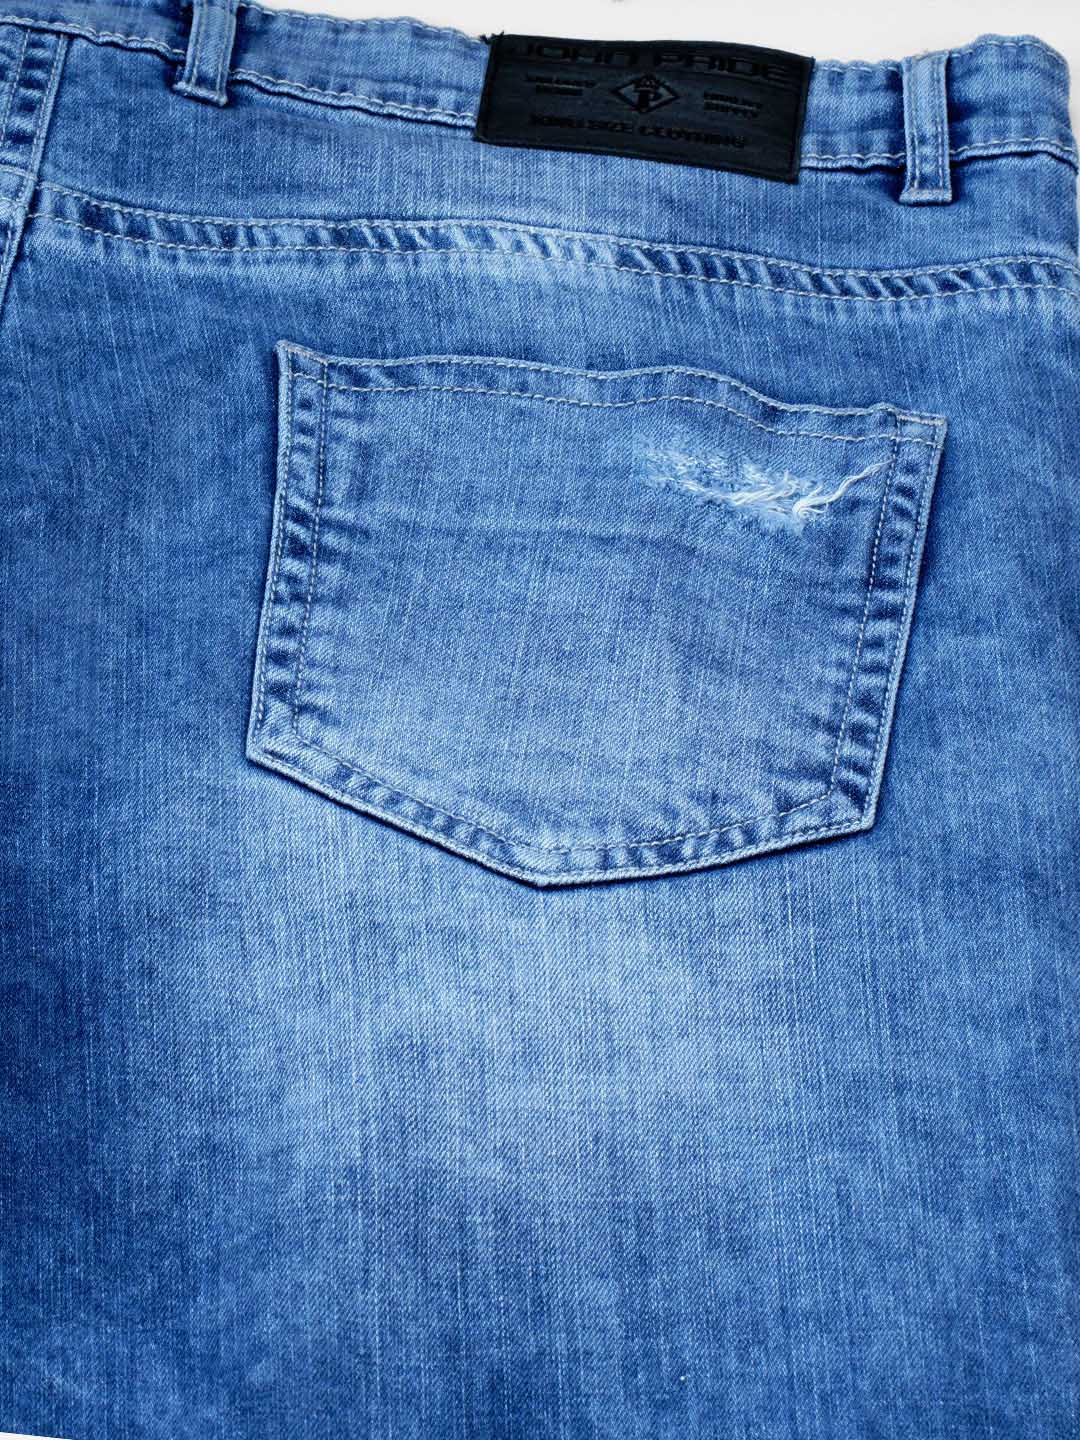 bottomwear/jeans/JPJ12112/jpj12112-5.jpg